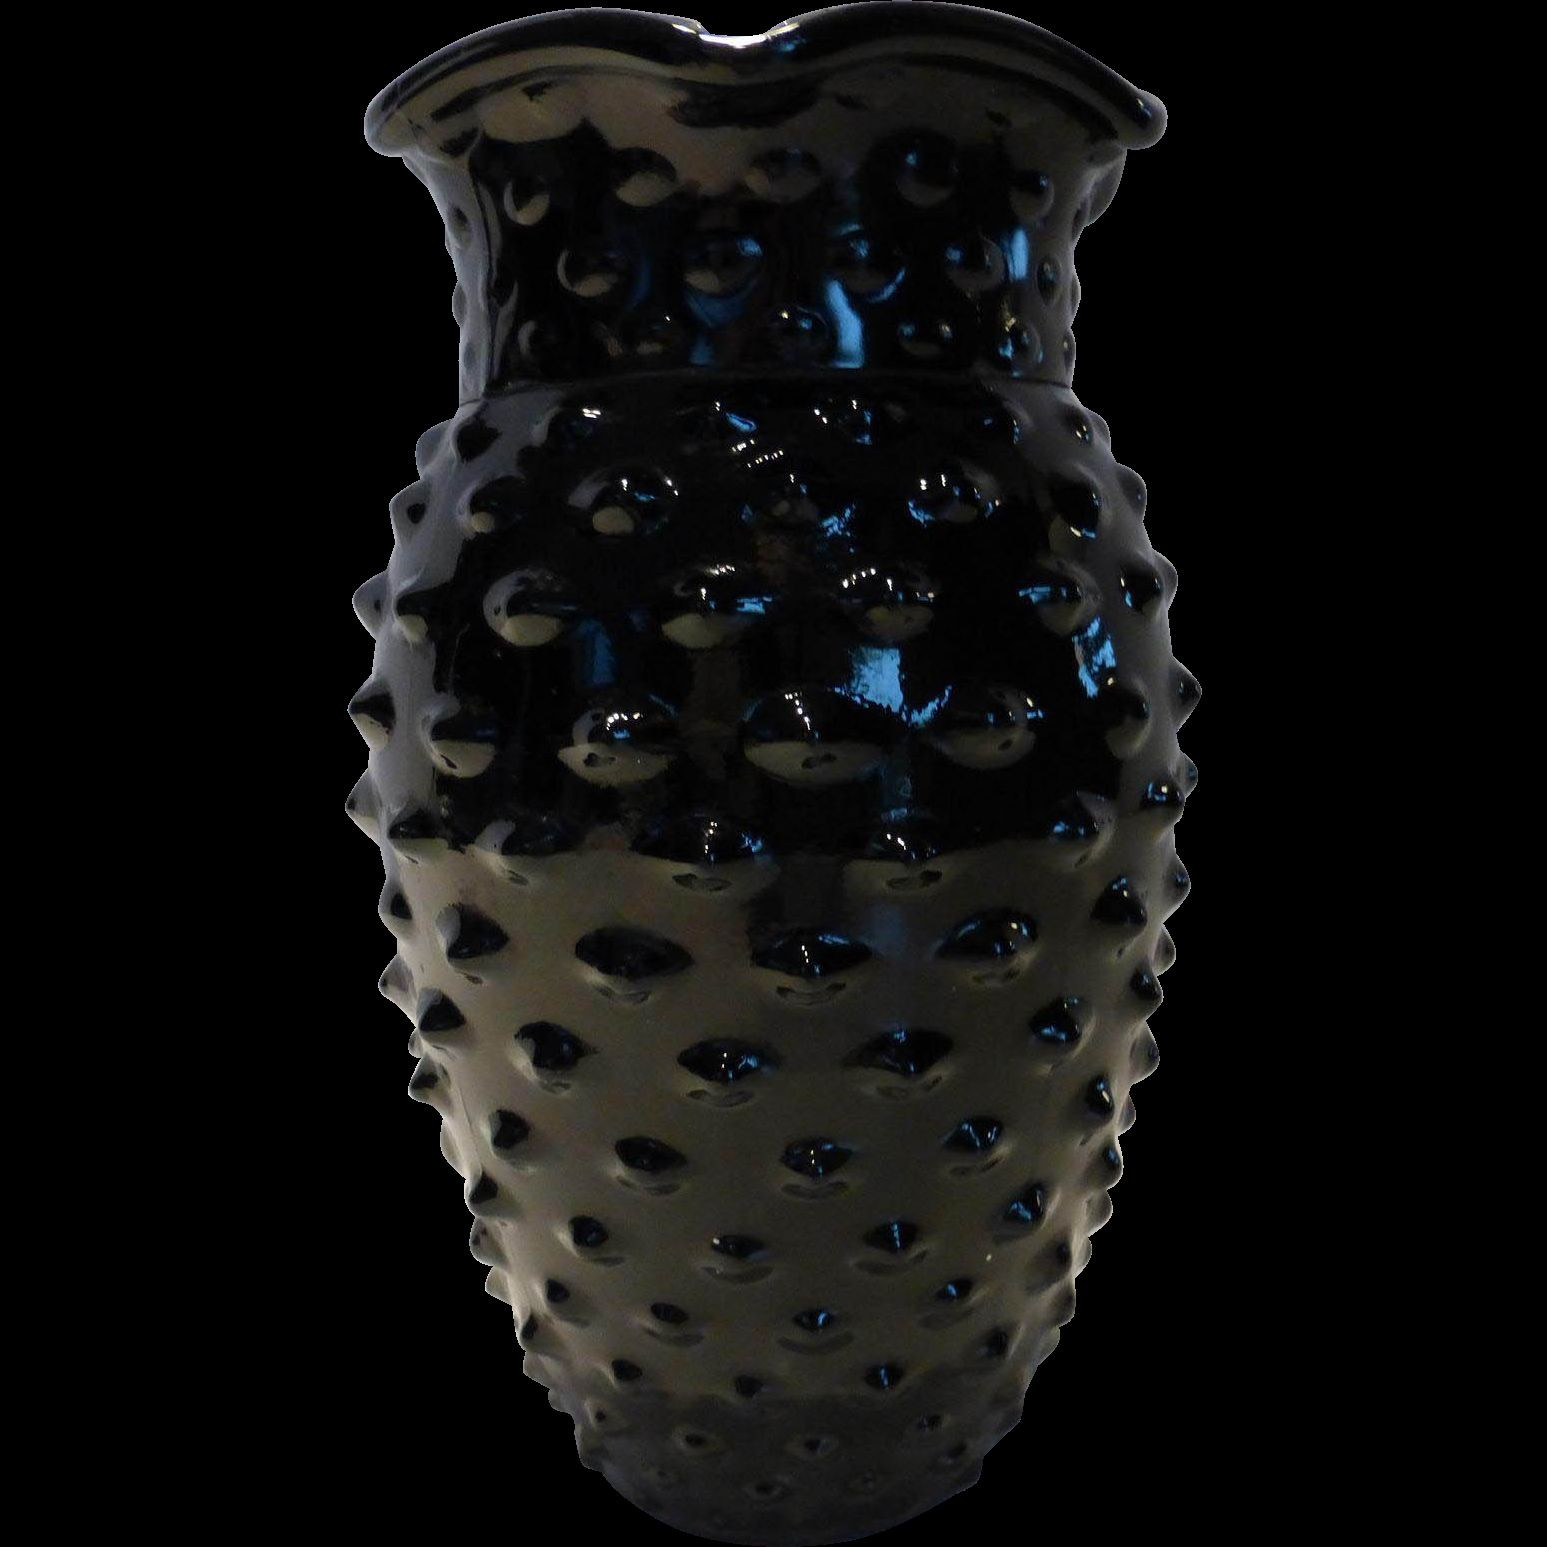 24 Elegant Azure Blue Art Glass Vase 2024 free download azure blue art glass vase of 22 hobnail glass vase the weekly world inside download wallpaper large black glass vase